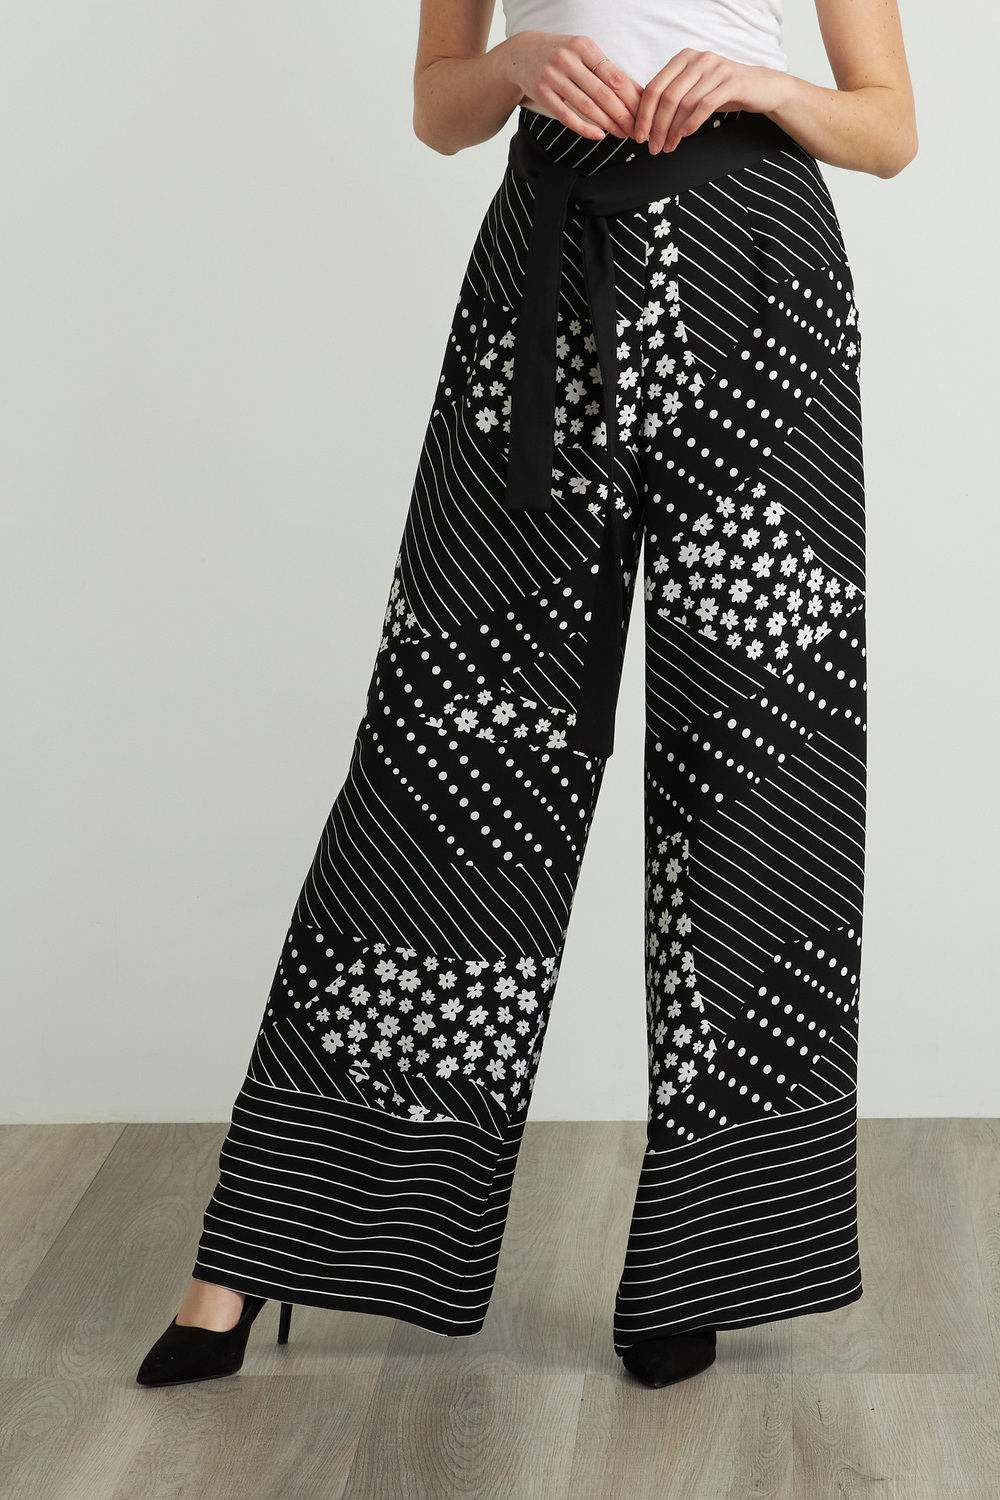 Joseph Ribkoff Pantalon imprimée modèle 212248. Noir/blanc